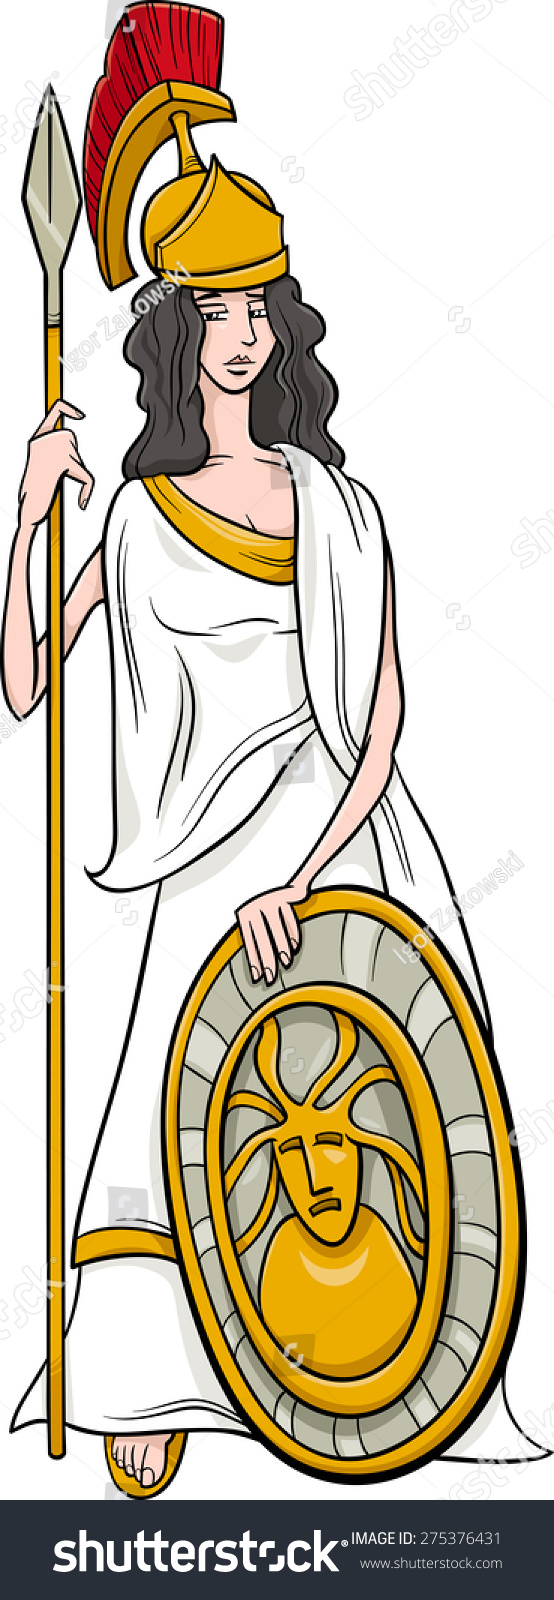 Cartoon Illustration Mythological Greek Goddess Athena Stock